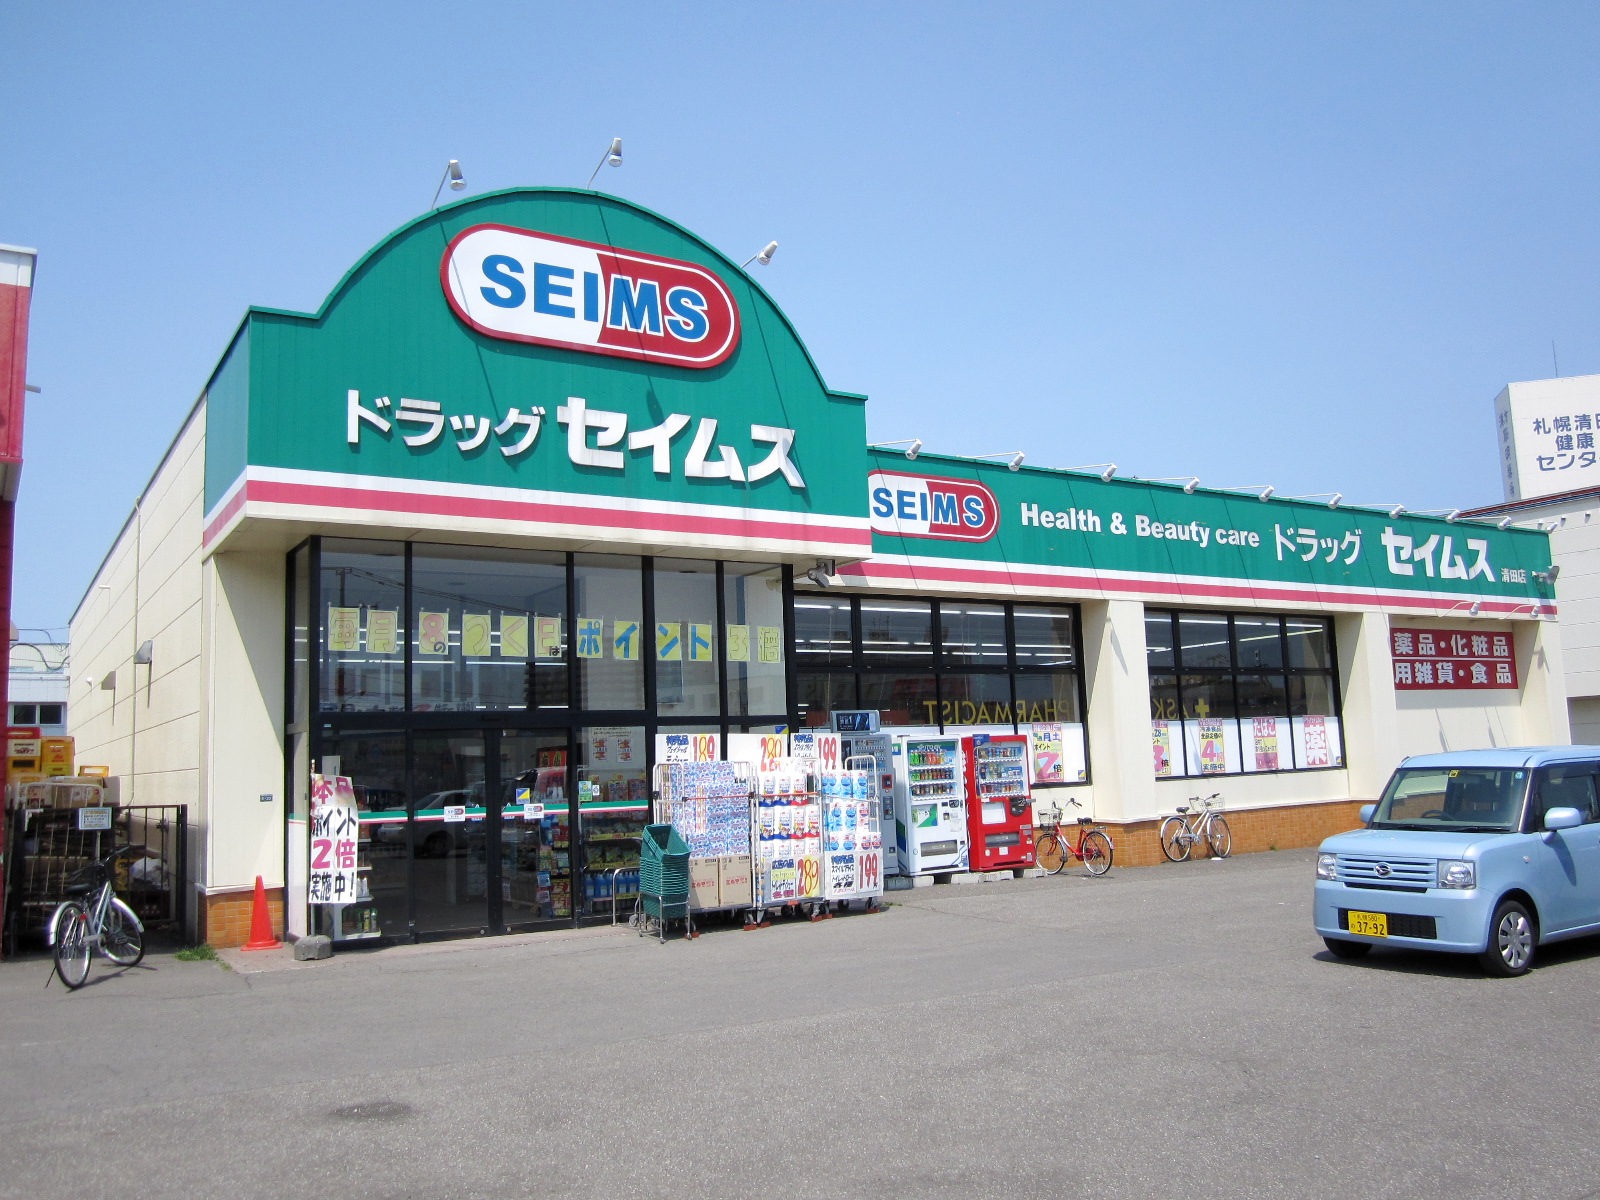 Dorakkusutoa. Drag Seimusu Kiyota store 648m to (drugstore)